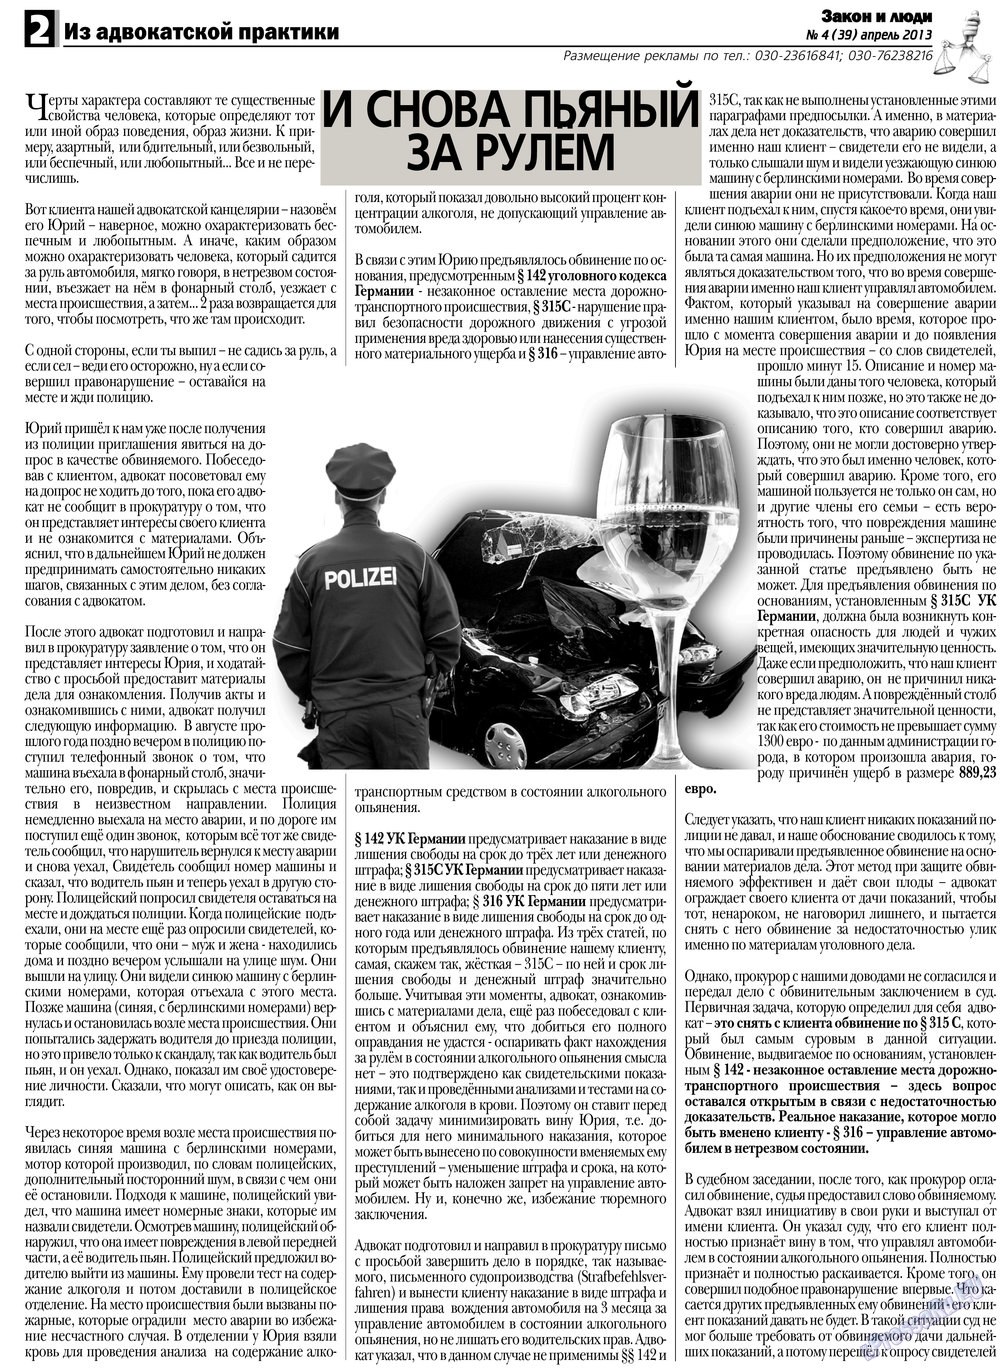 Закон и люди, газета. 2013 №4 стр.2